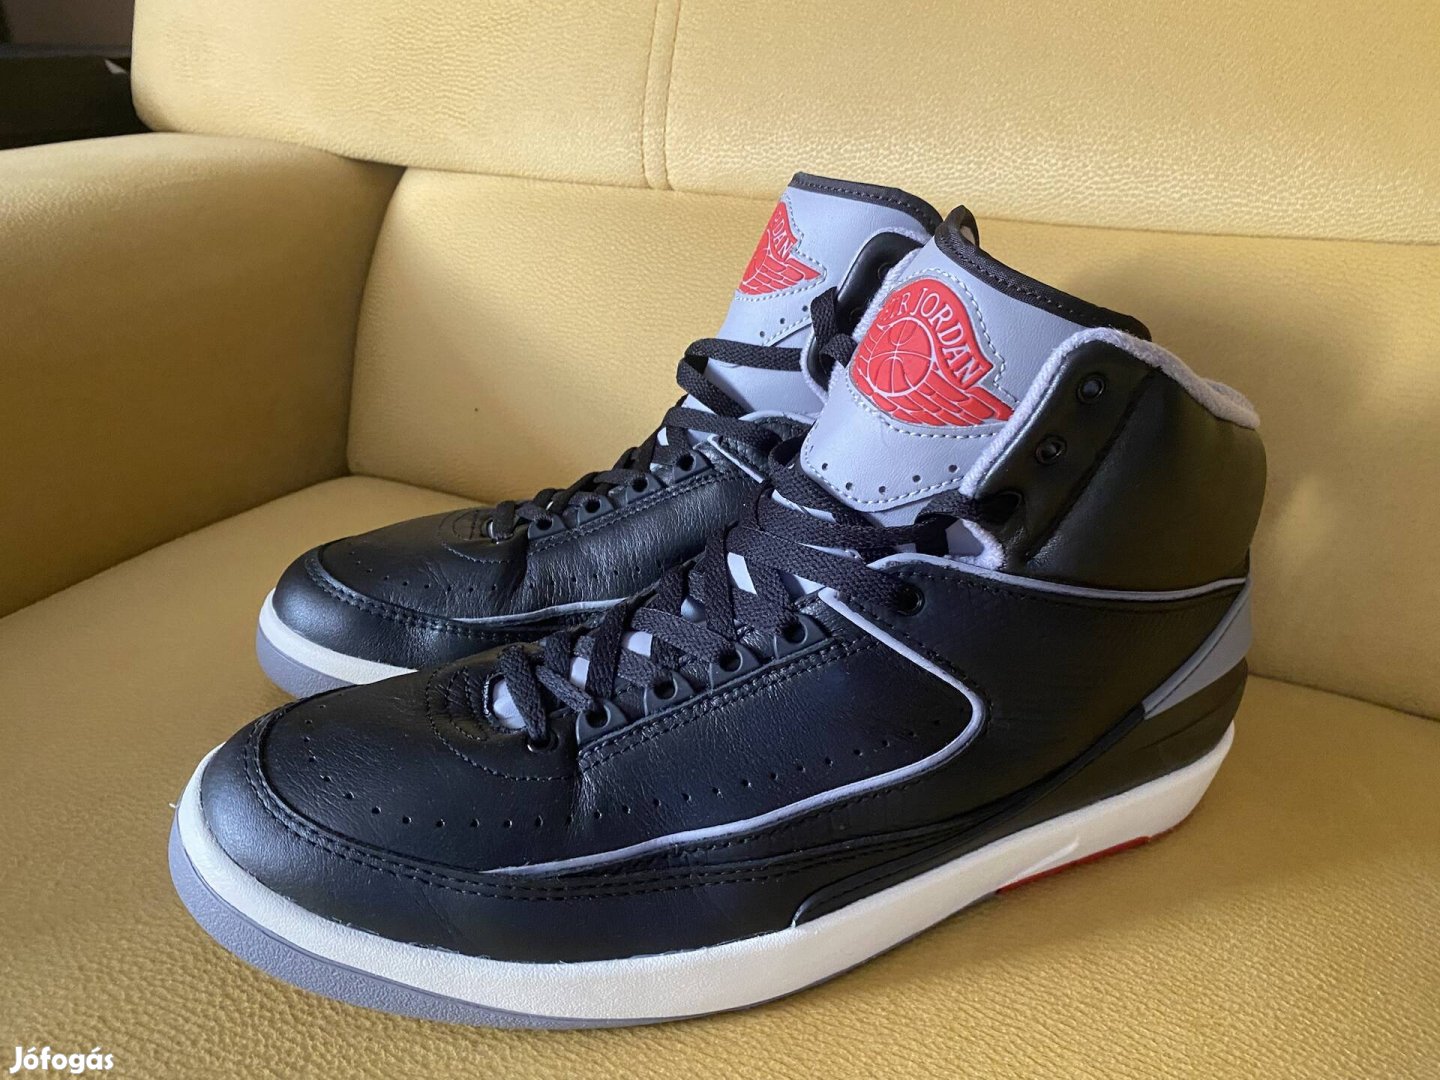 Jordan Retro 2 Black Cement kosárlabda cipő